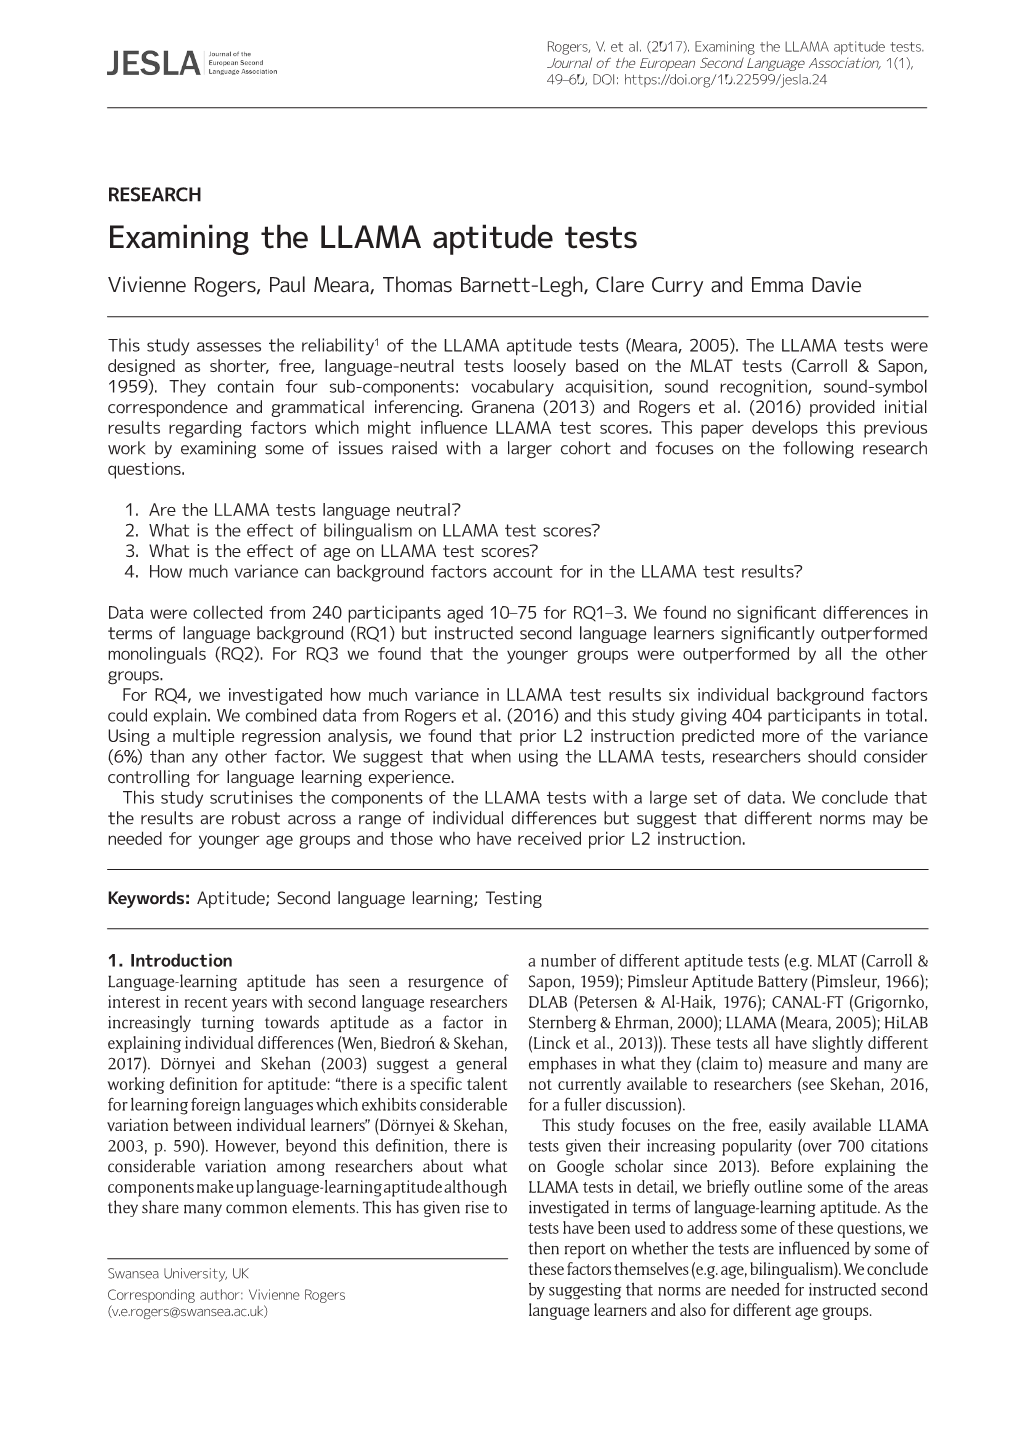 Examining The LLAMA Aptitude Tests DocsLib